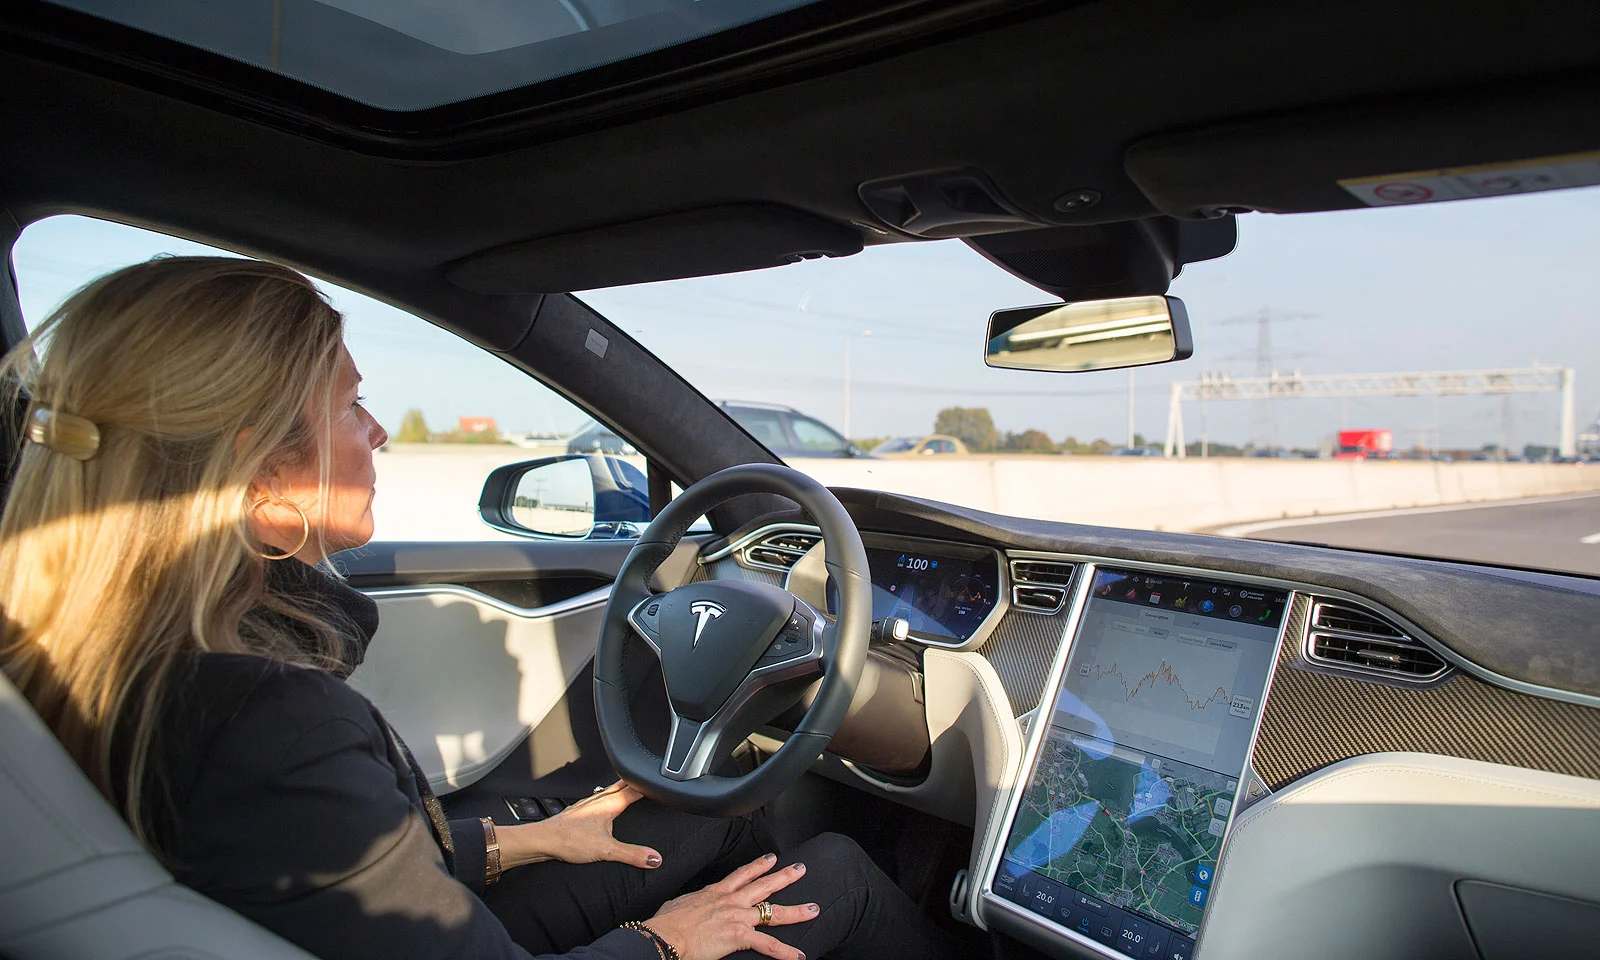 Tesla-Autos werden Versuche blockieren können, die Vorschrift zu umgehen, die Hände am Lenkrad zu lassen